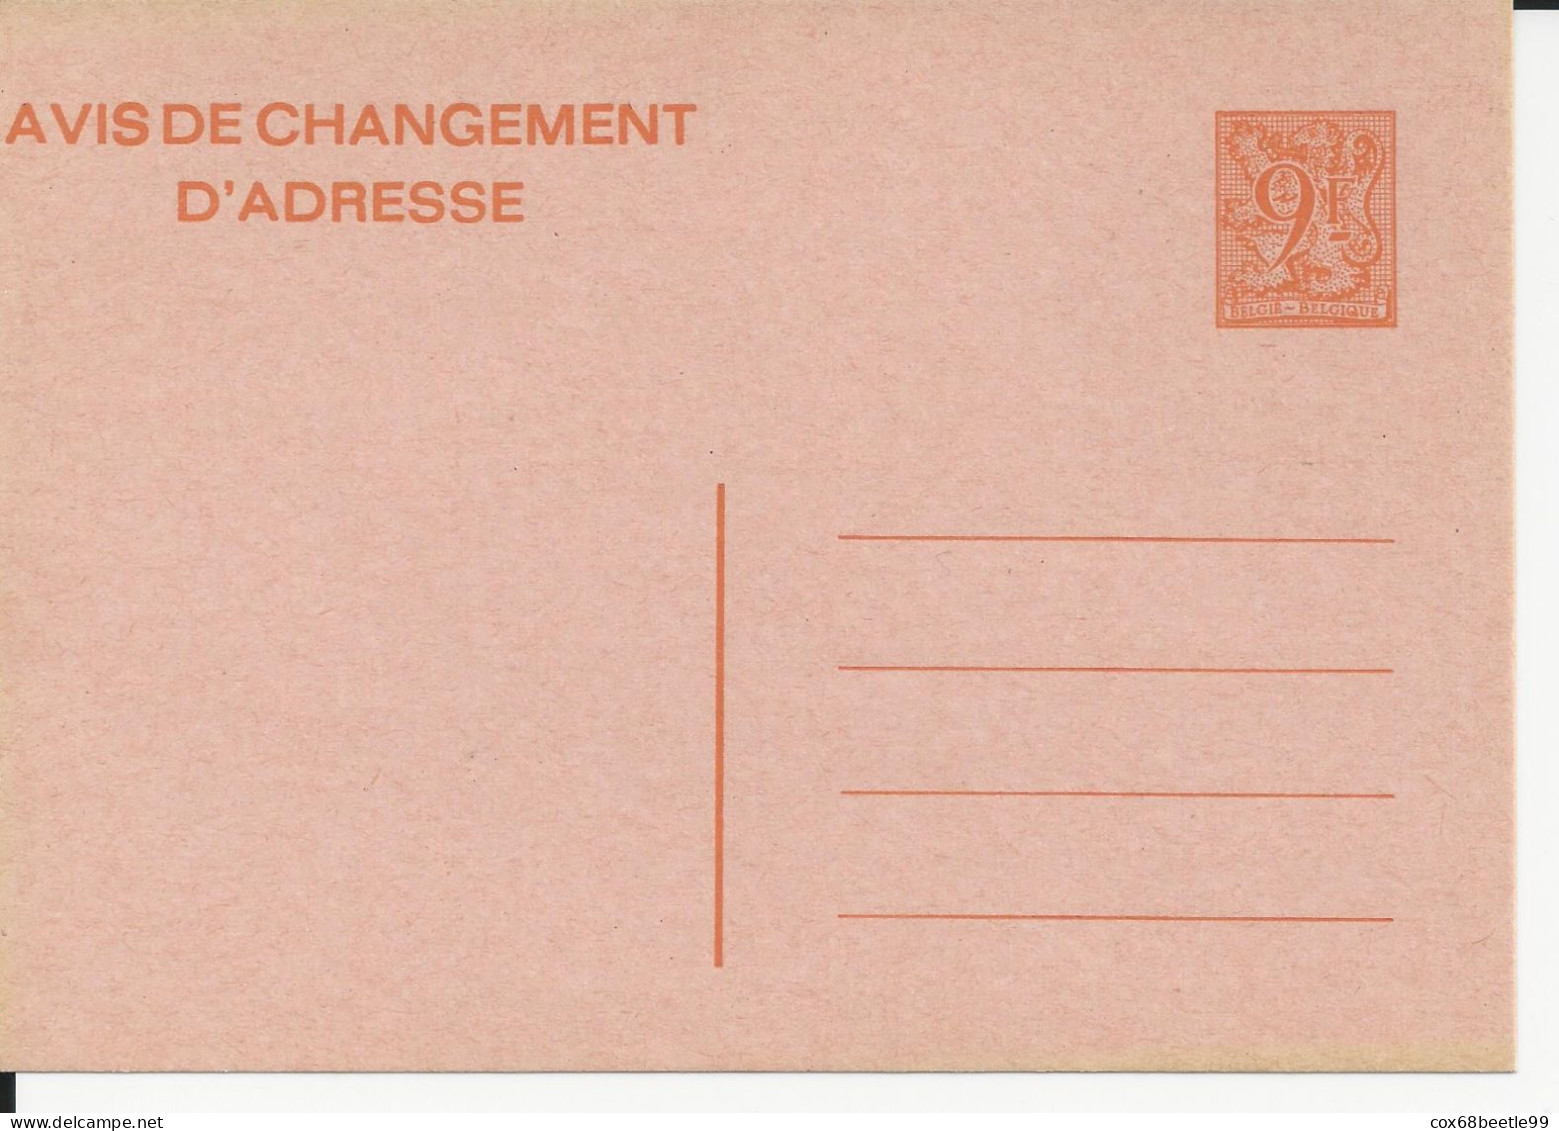 Belgique Belgie Avis Changement D'adresse 9 Francs Neuf Non Circulé - Aviso Cambio De Direccion